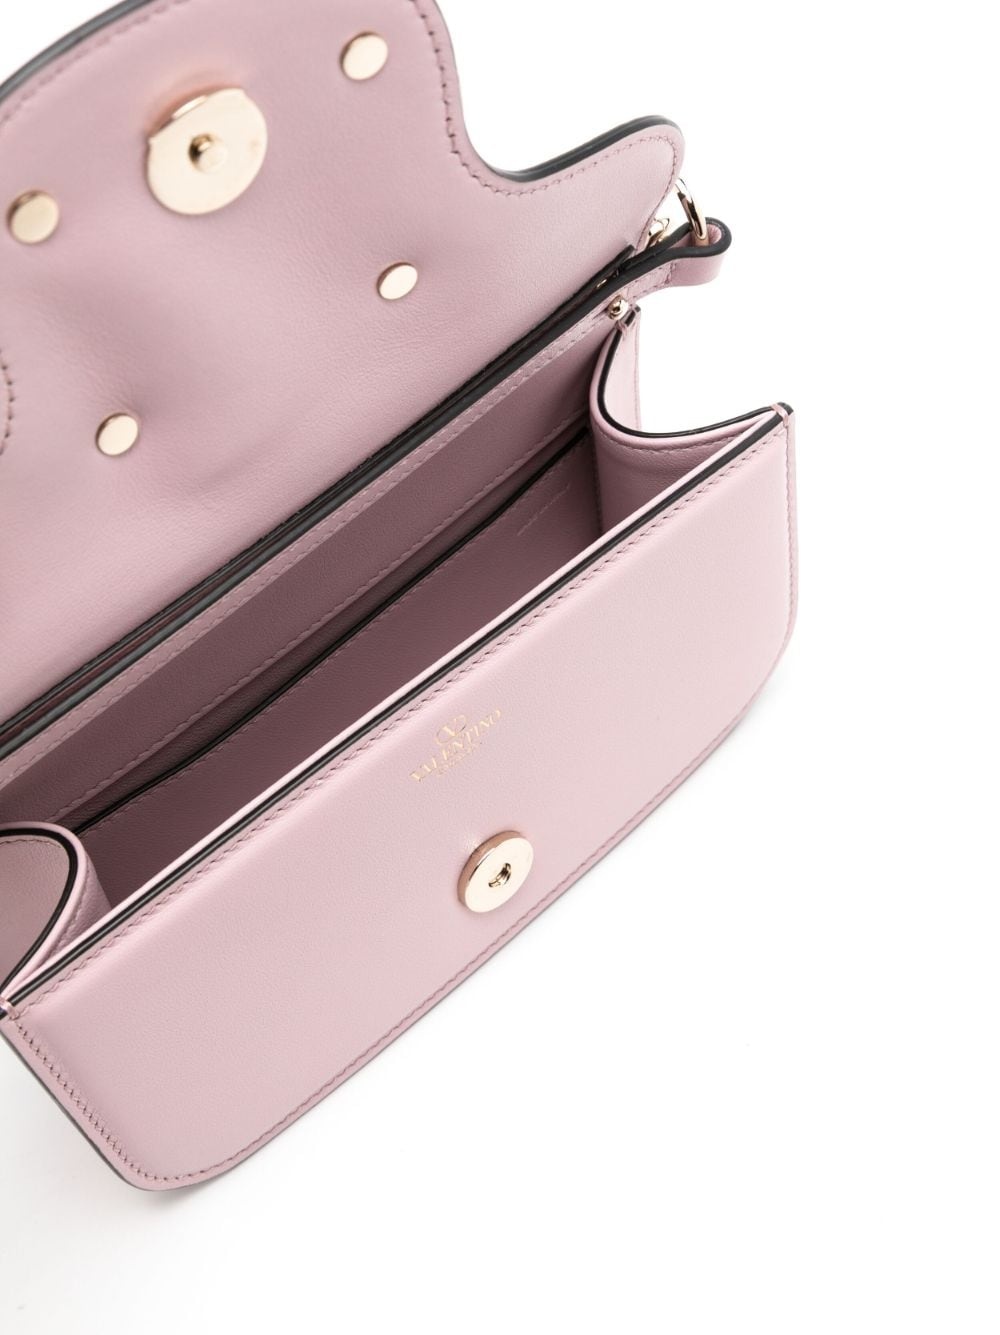 Loco Small Embellished Shoulder Bag in Pink - Valentino Garavani